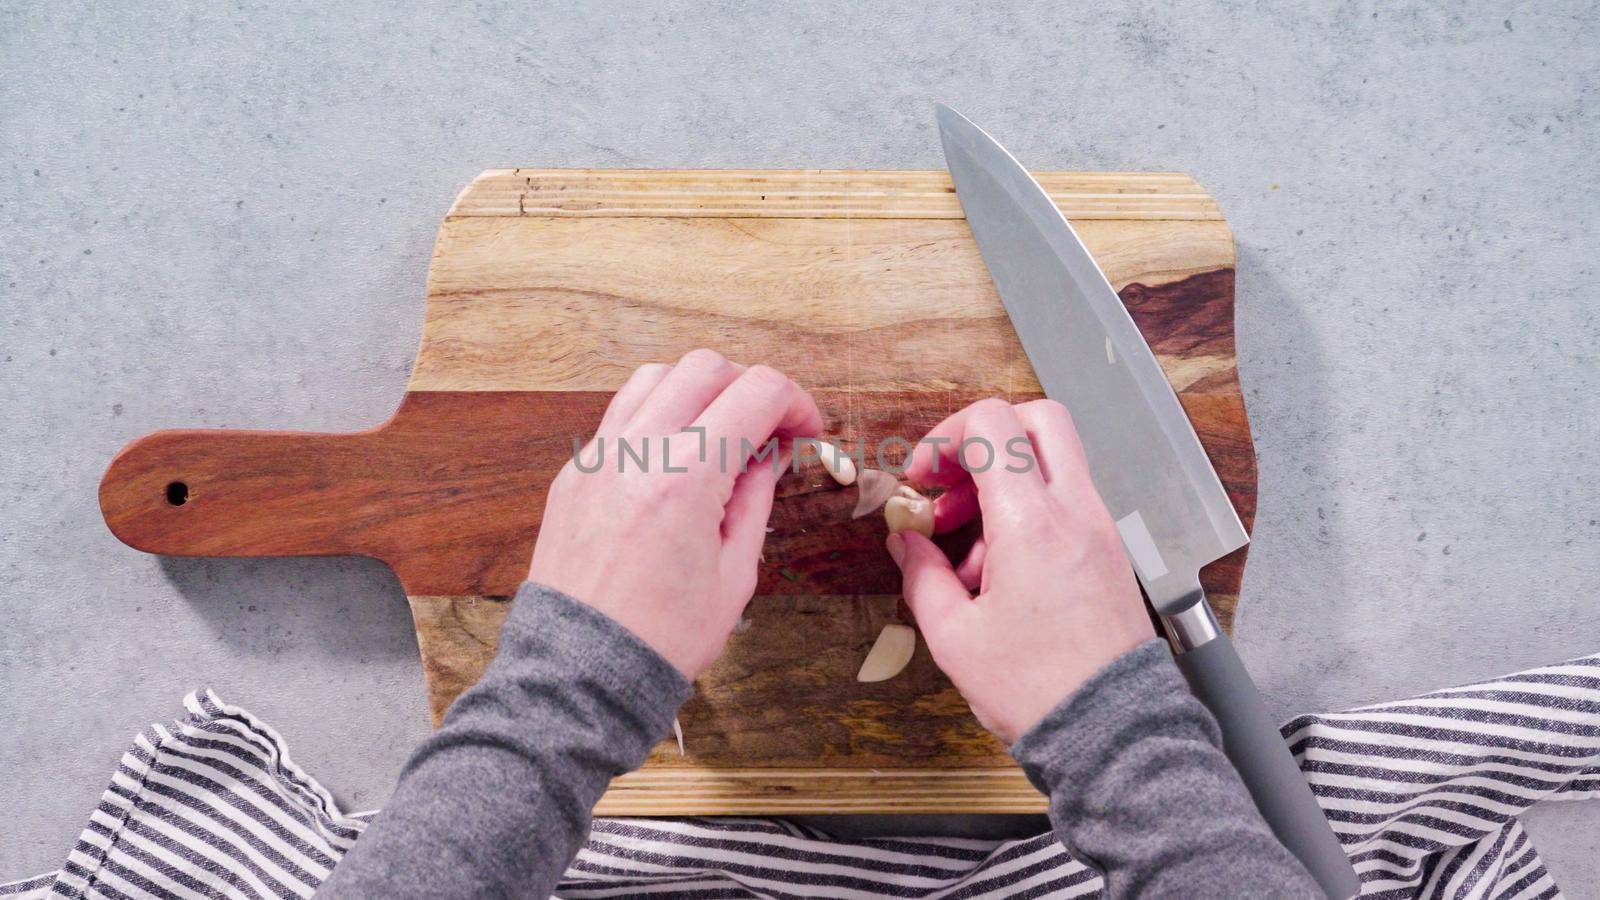 Cutting organic garlic on a wood cutting board.